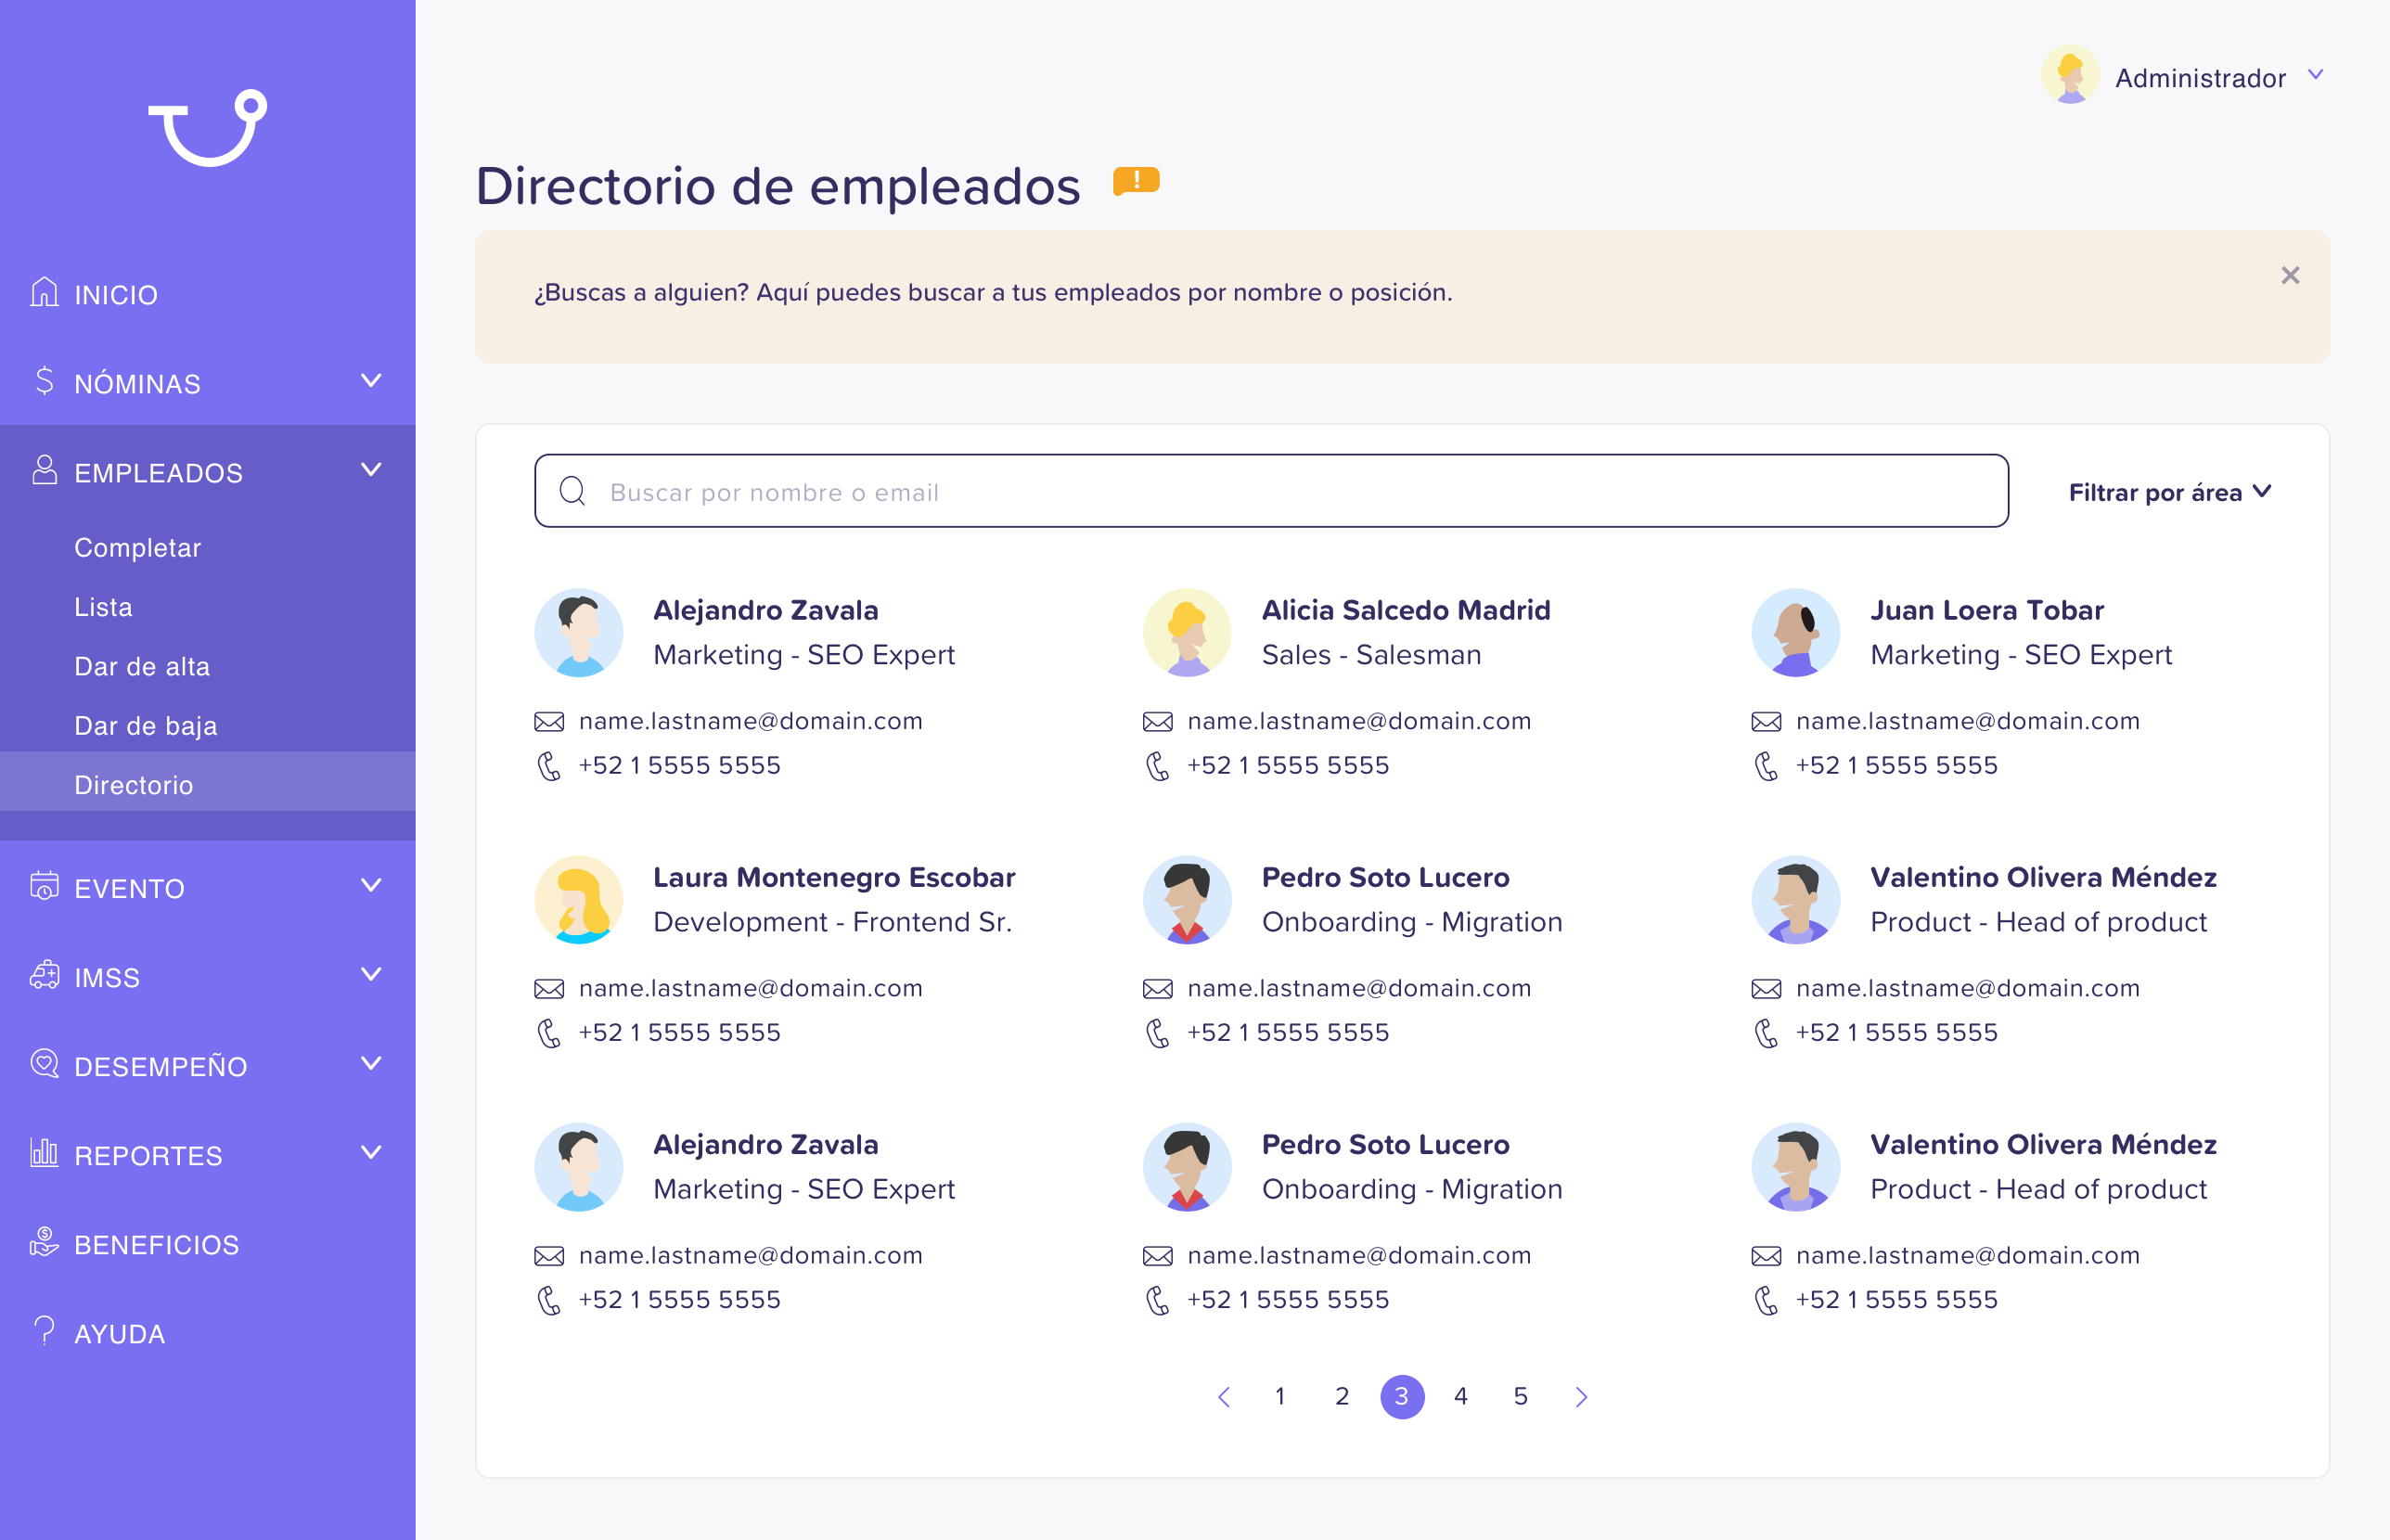 Directorio_de_empleados-3.0.0.png